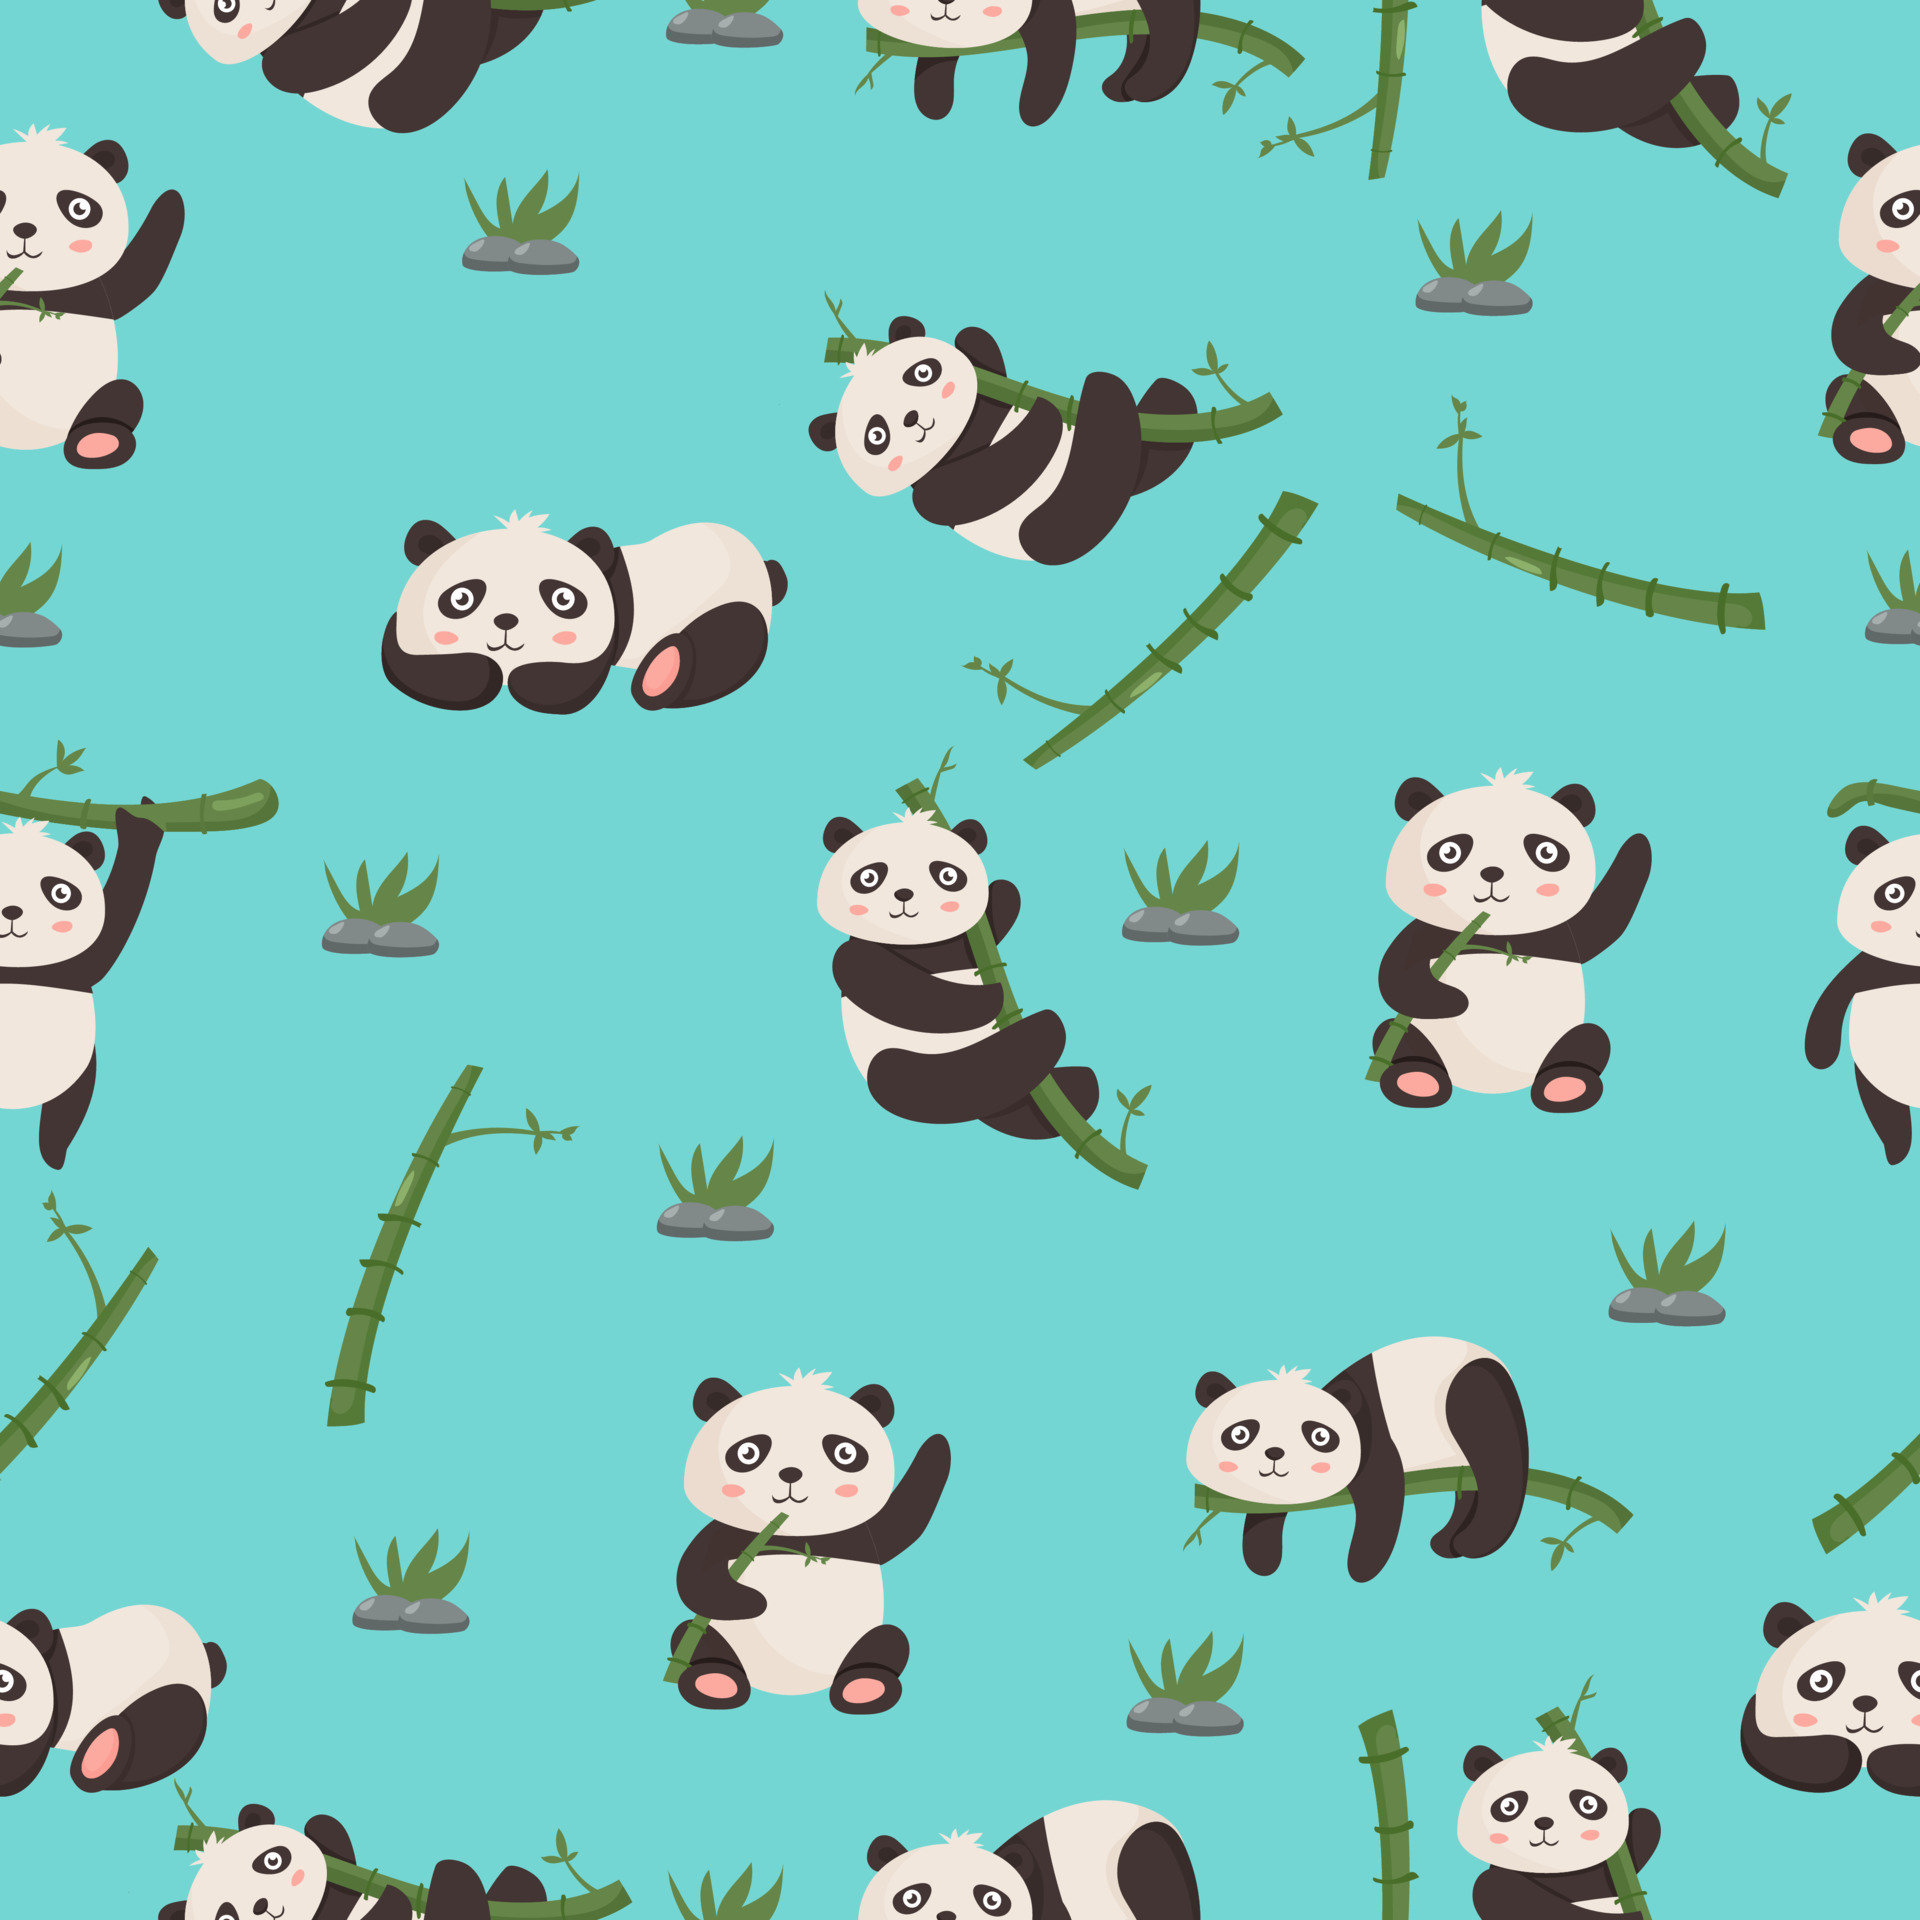 Desenhos animados do urso panda fofo dormindo em bambu boa noite